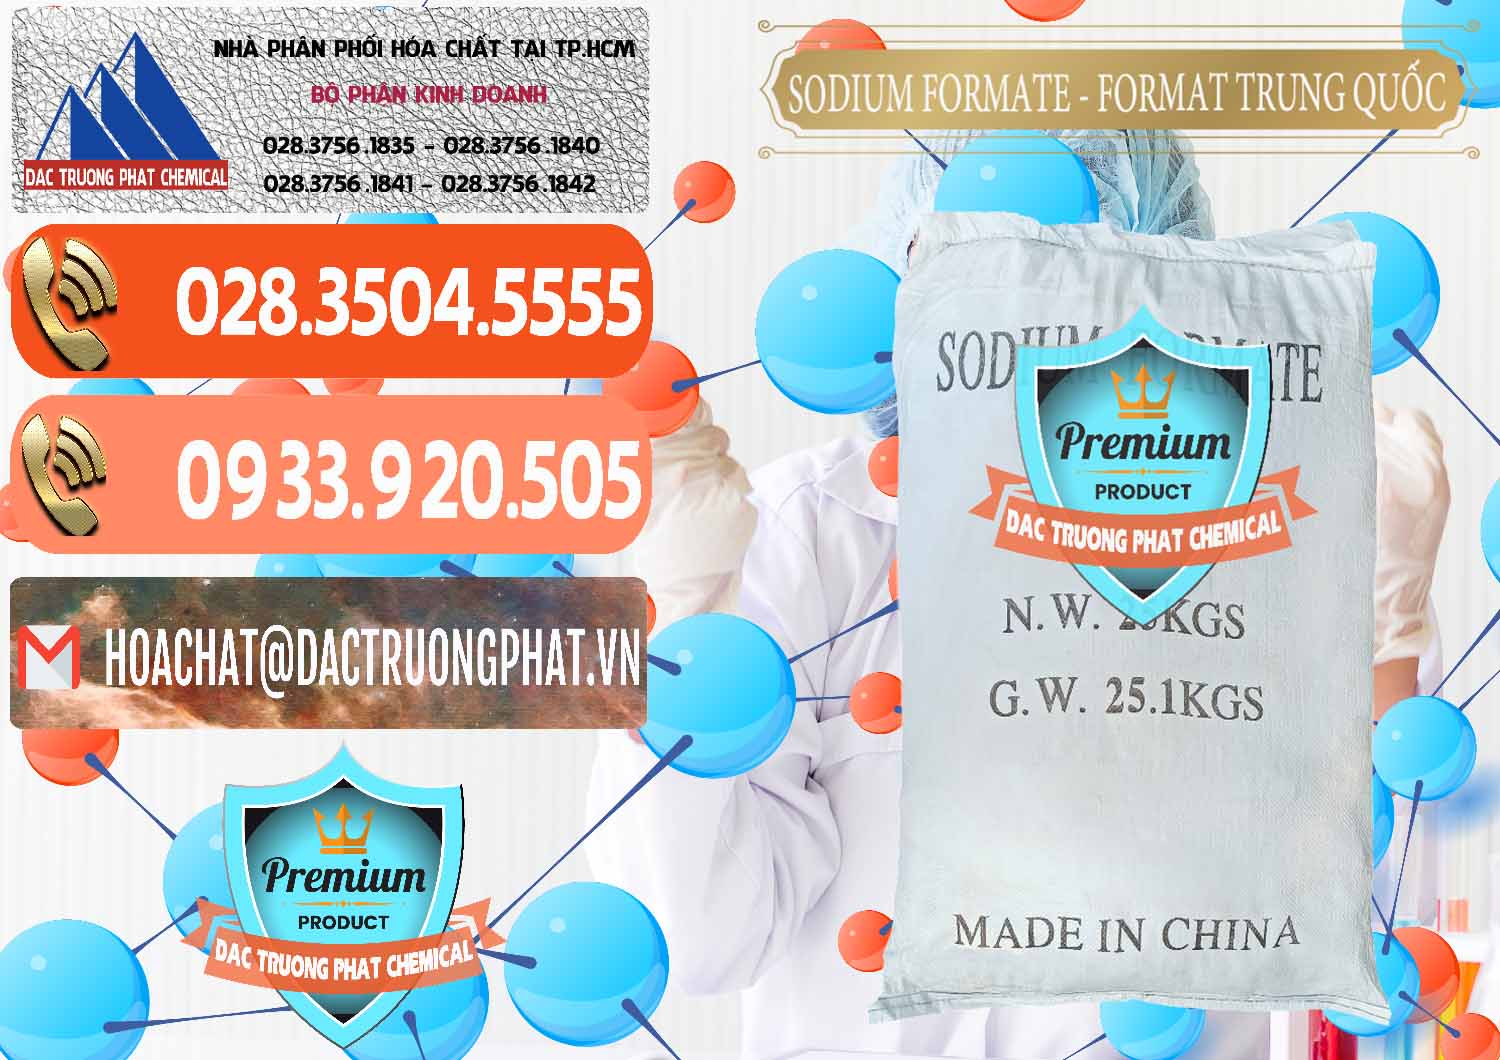 Nhà cung ứng _ bán Sodium Formate - Natri Format Trung Quốc China - 0142 - Công ty chuyên kinh doanh ( cung cấp ) hóa chất tại TP.HCM - hoachatmientay.com